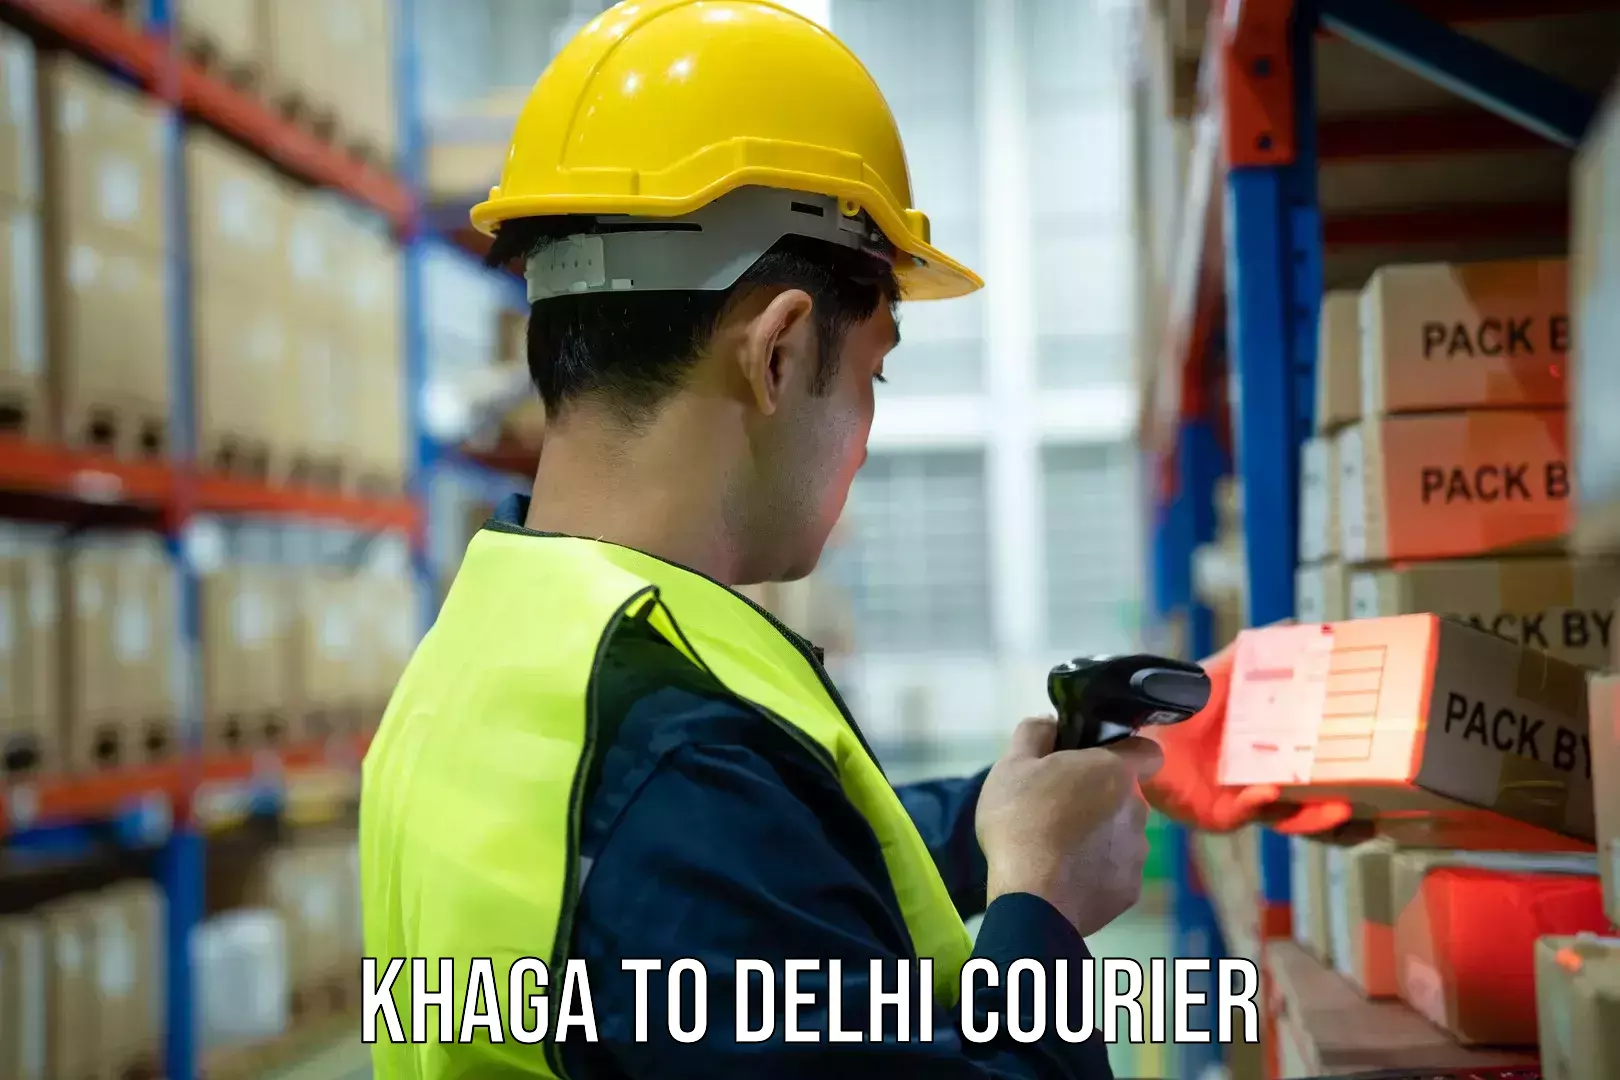 Advanced courier platforms Khaga to Delhi